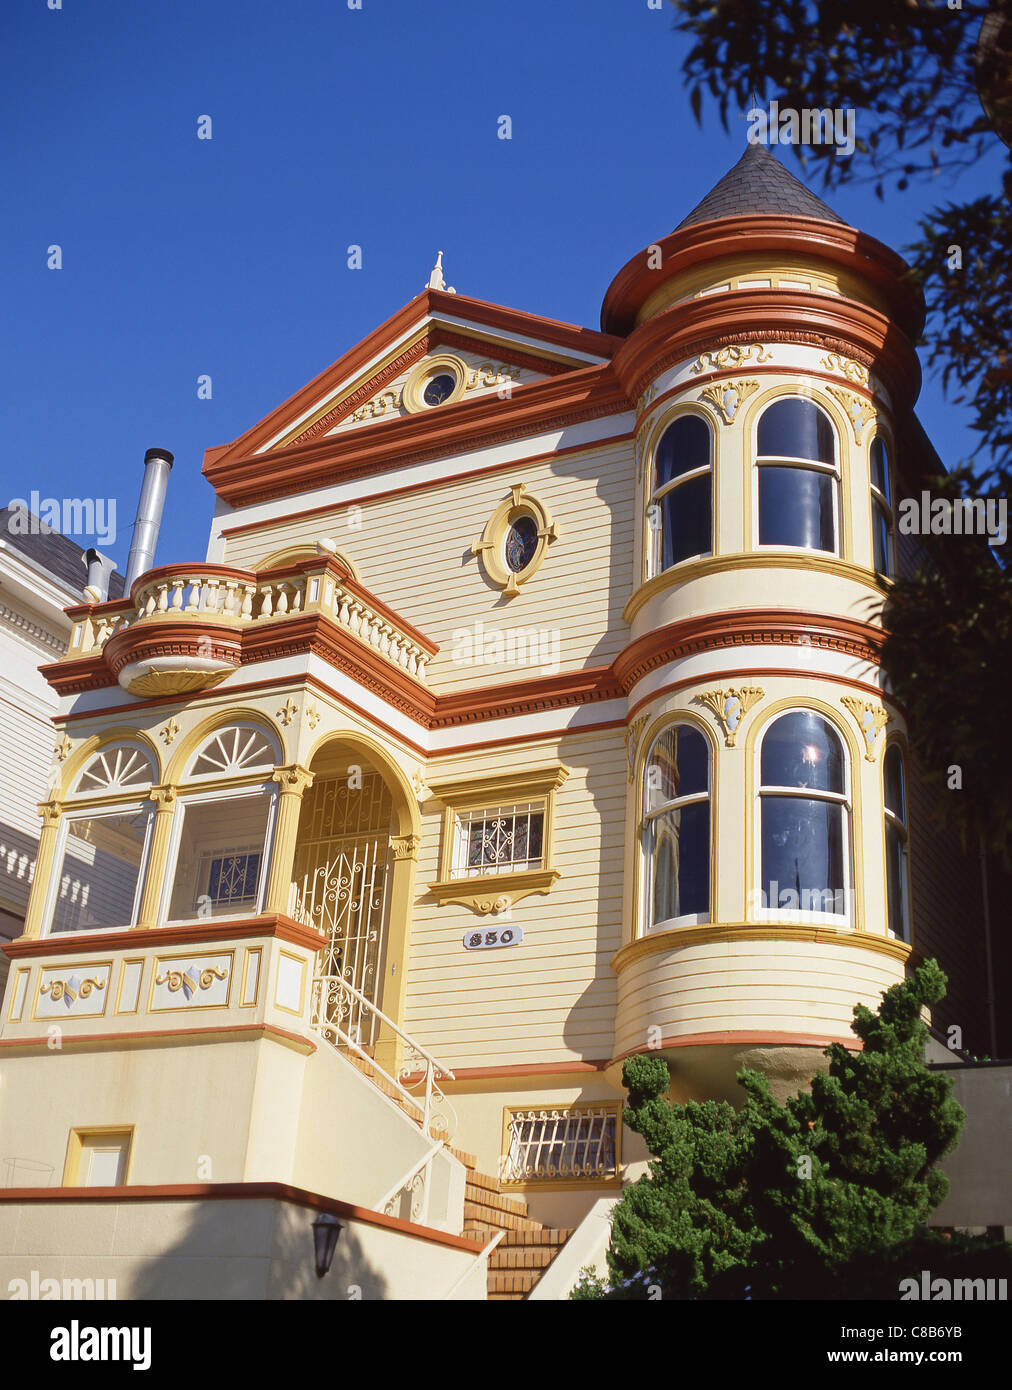 Viktorianisches Haus auf Steiner Strasse, Alamo Square, San Francisco, Kalifornien, Vereinigte Staaten von Amerika Stockfoto